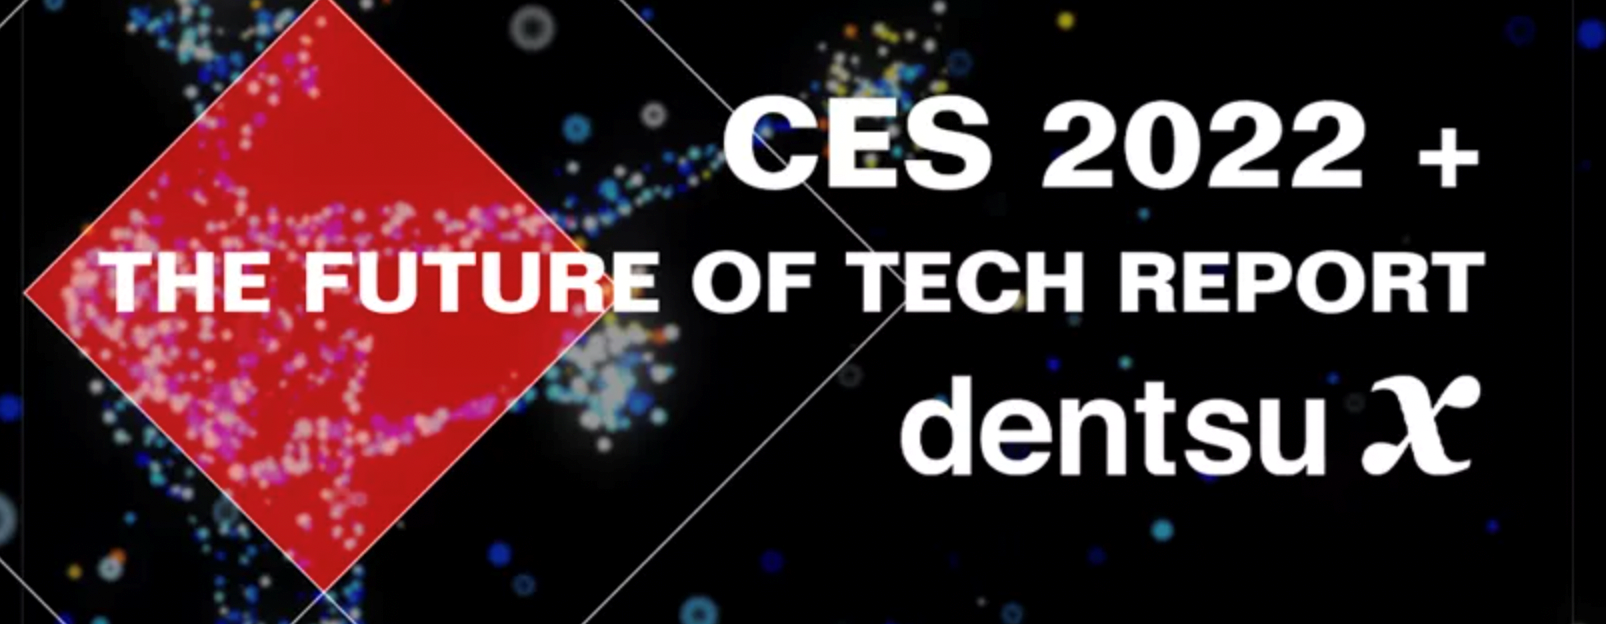 Dentsu X's CES 2022 & The Future of Tech Report